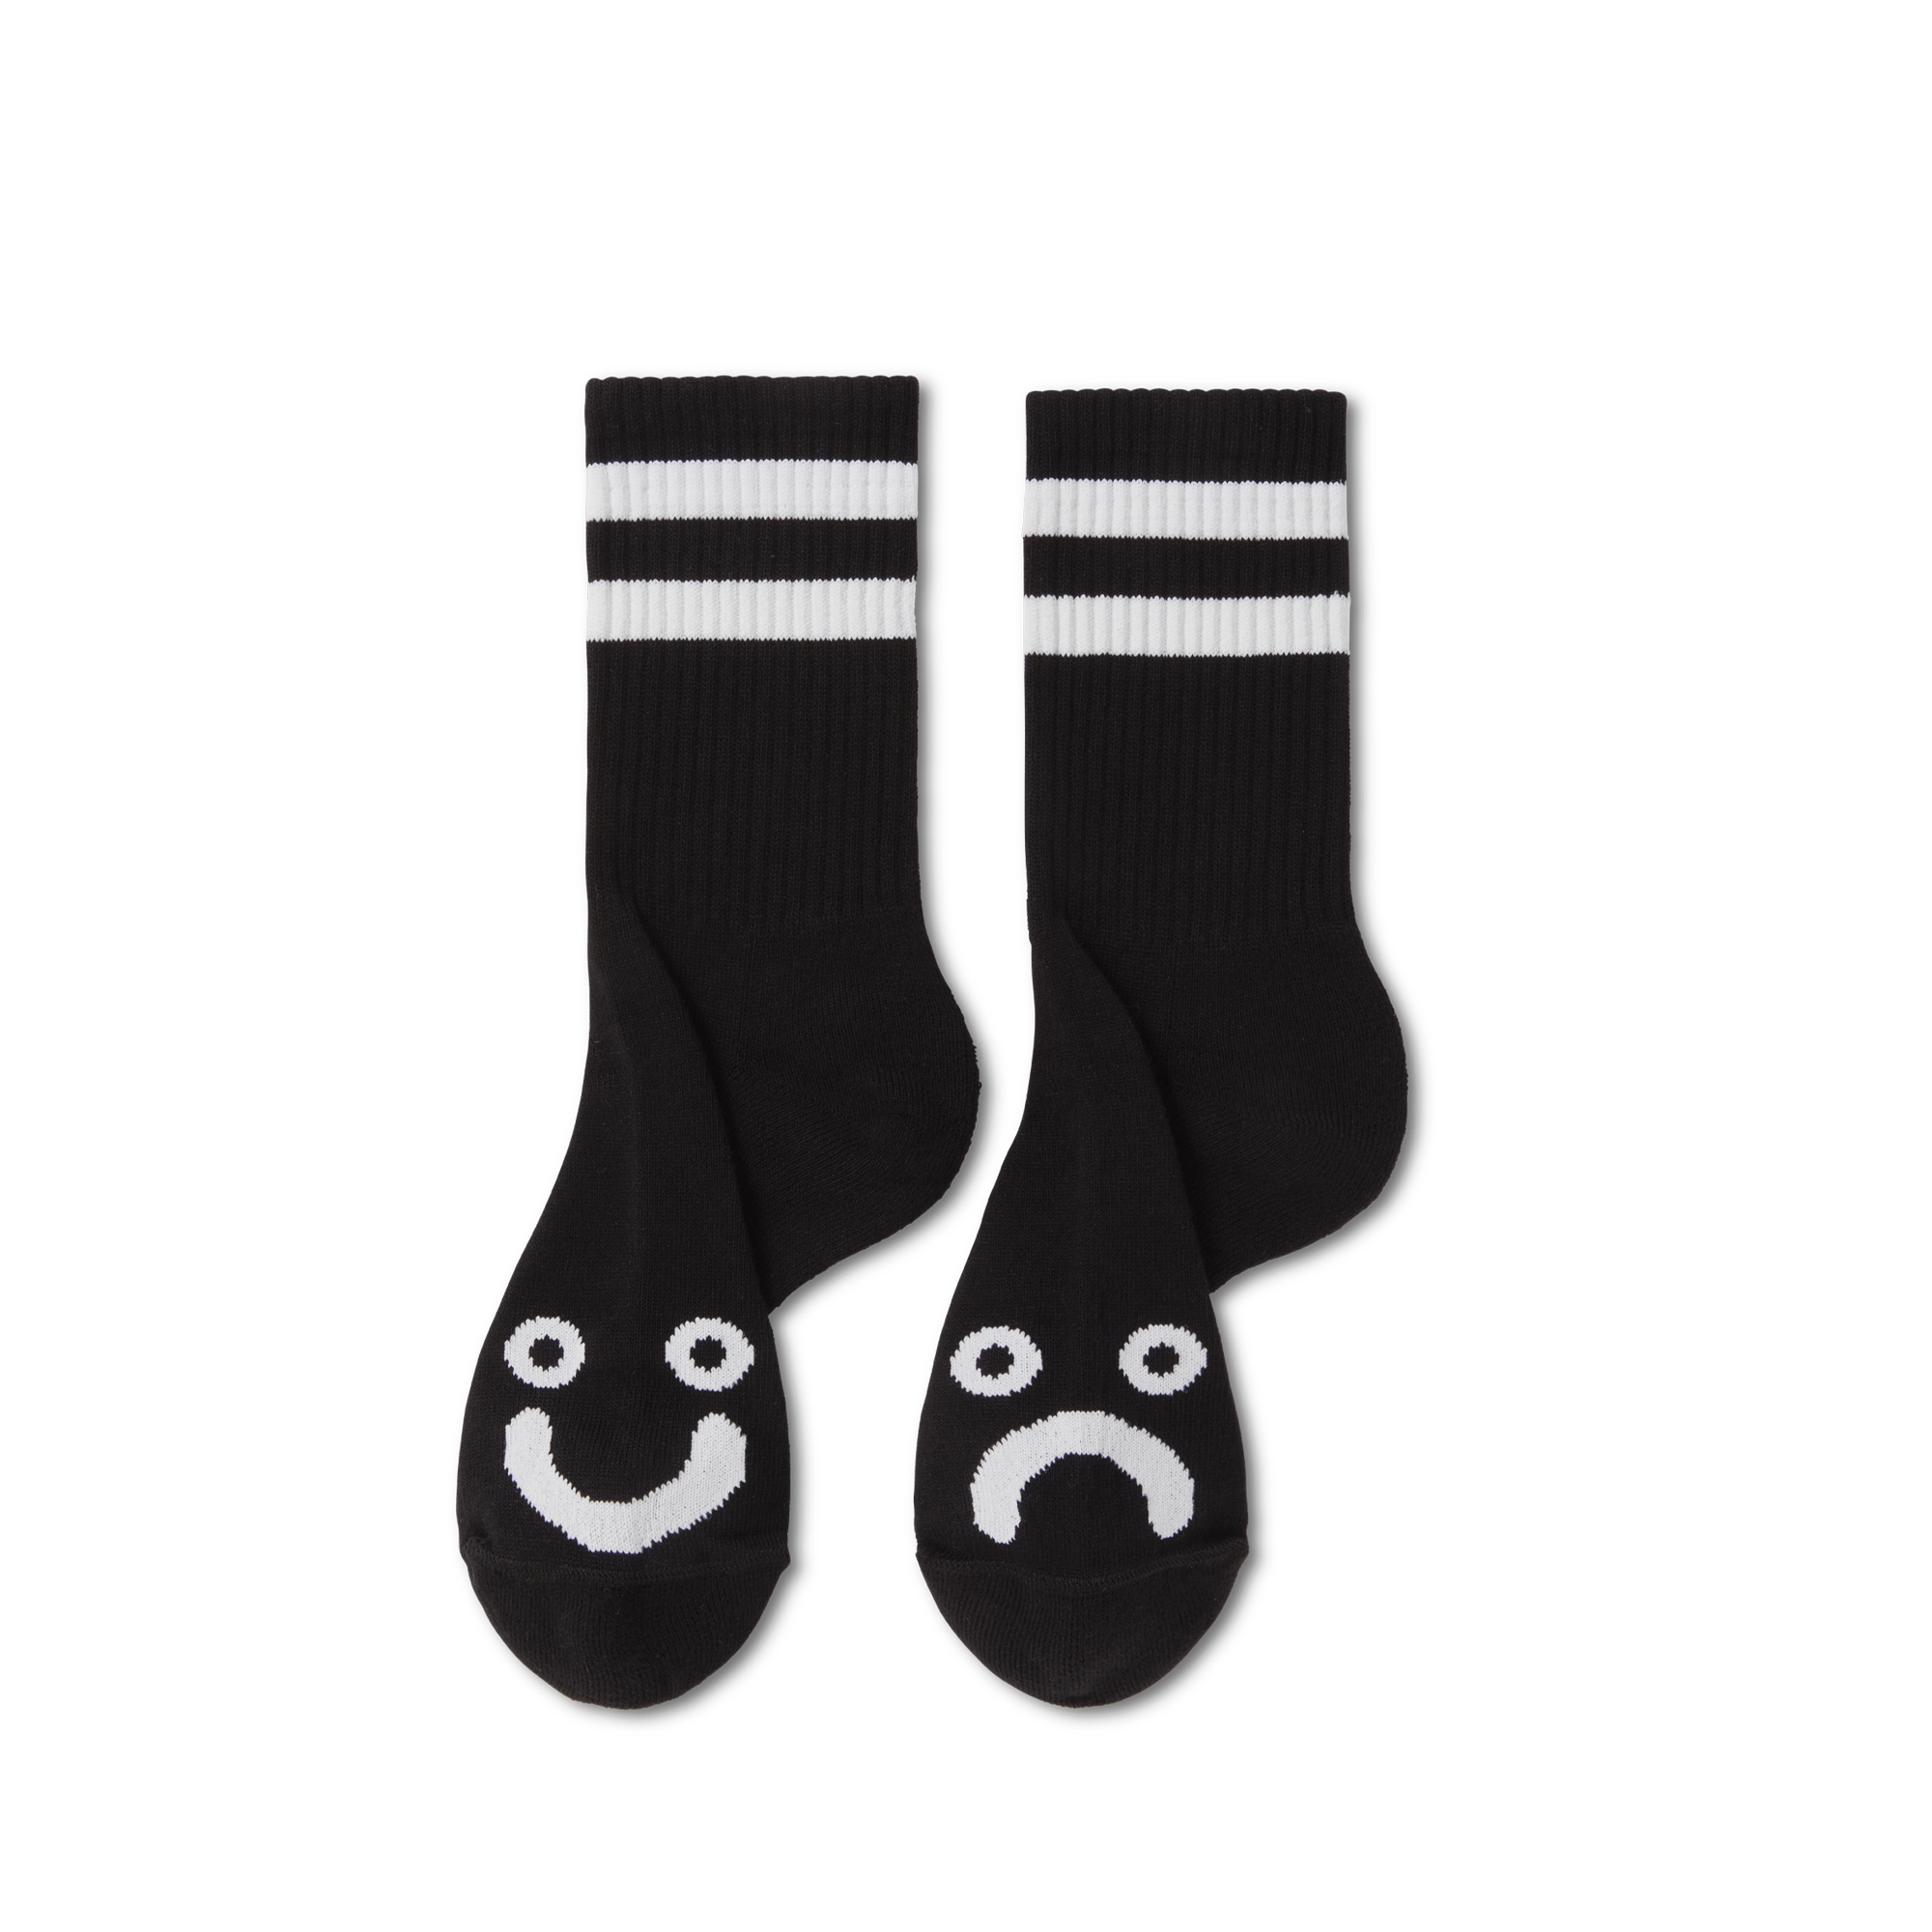 Polar Skate Co. Rib Socks Happy Sad Black